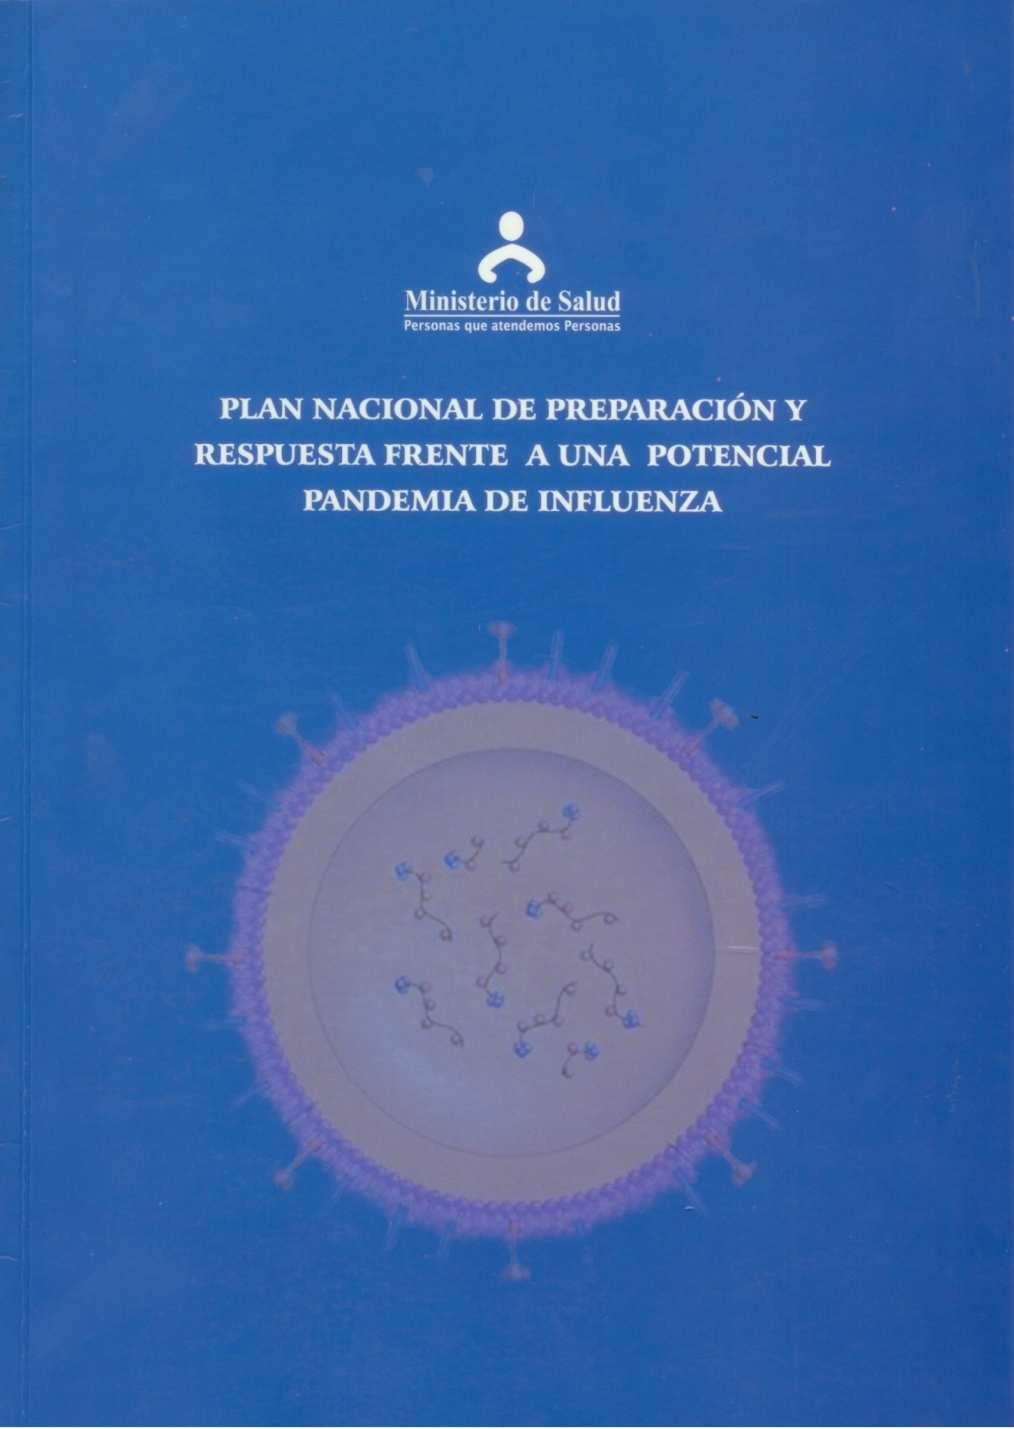 Acciones desarrolladas Desde el 24 de abril se activó el Comité de Emergencia previsto en la Norma Técnica sobre Potencial Pandemia de Influenza, con 05 componentes: Planificación y